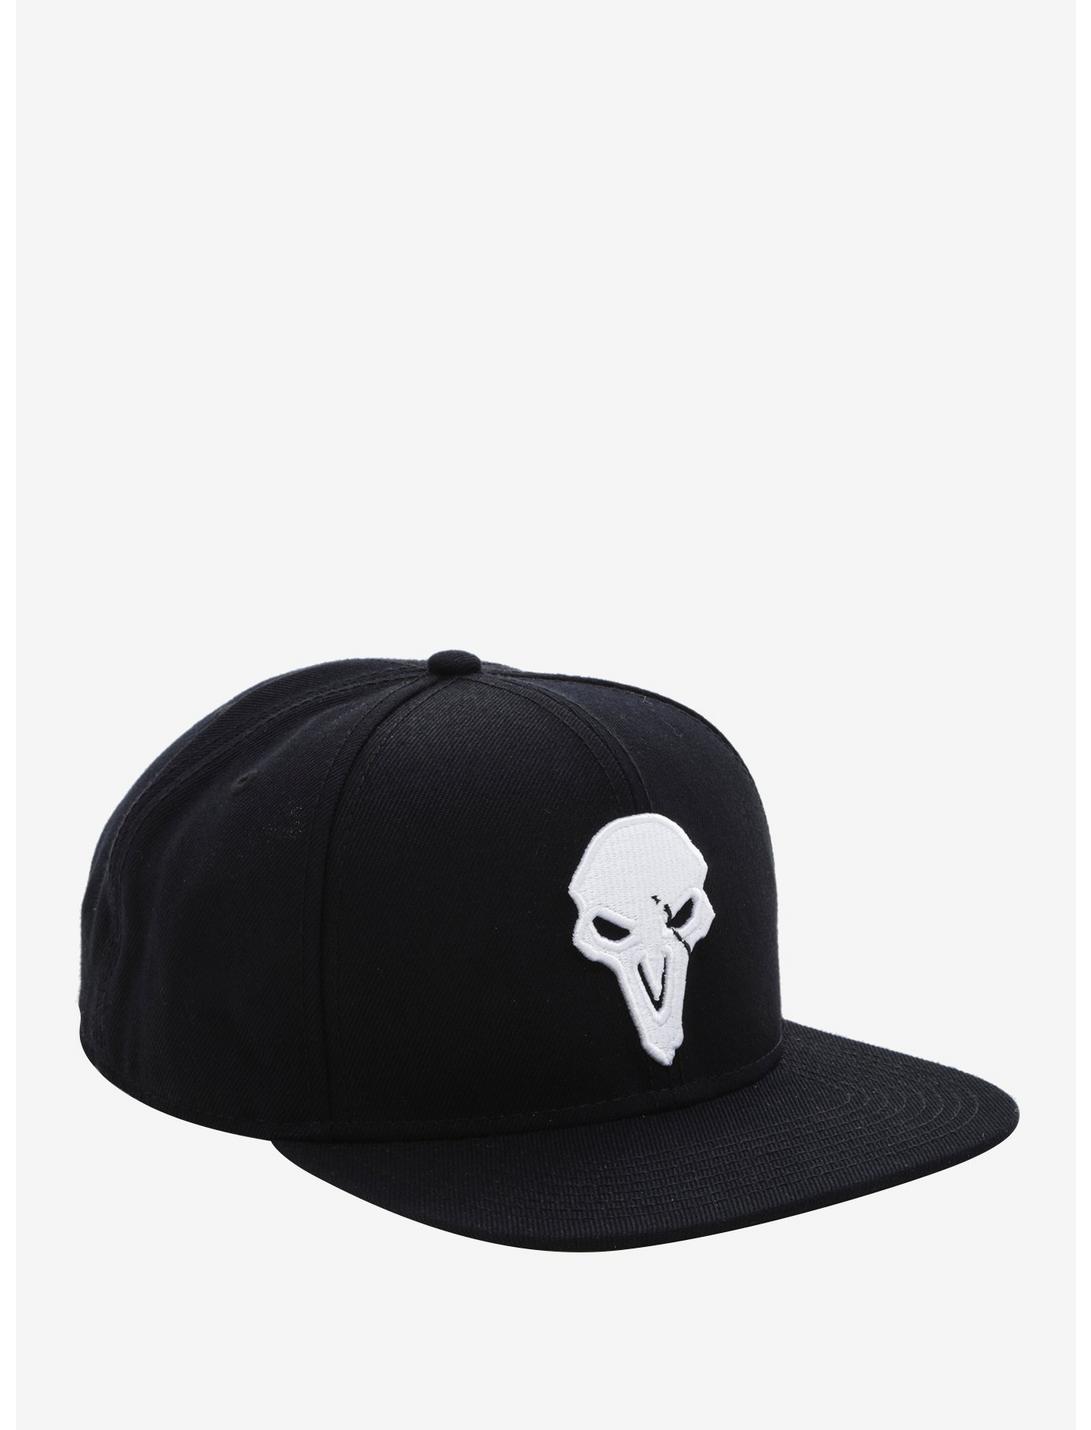 Overwatch Reaper Snapback Hat, , hi-res